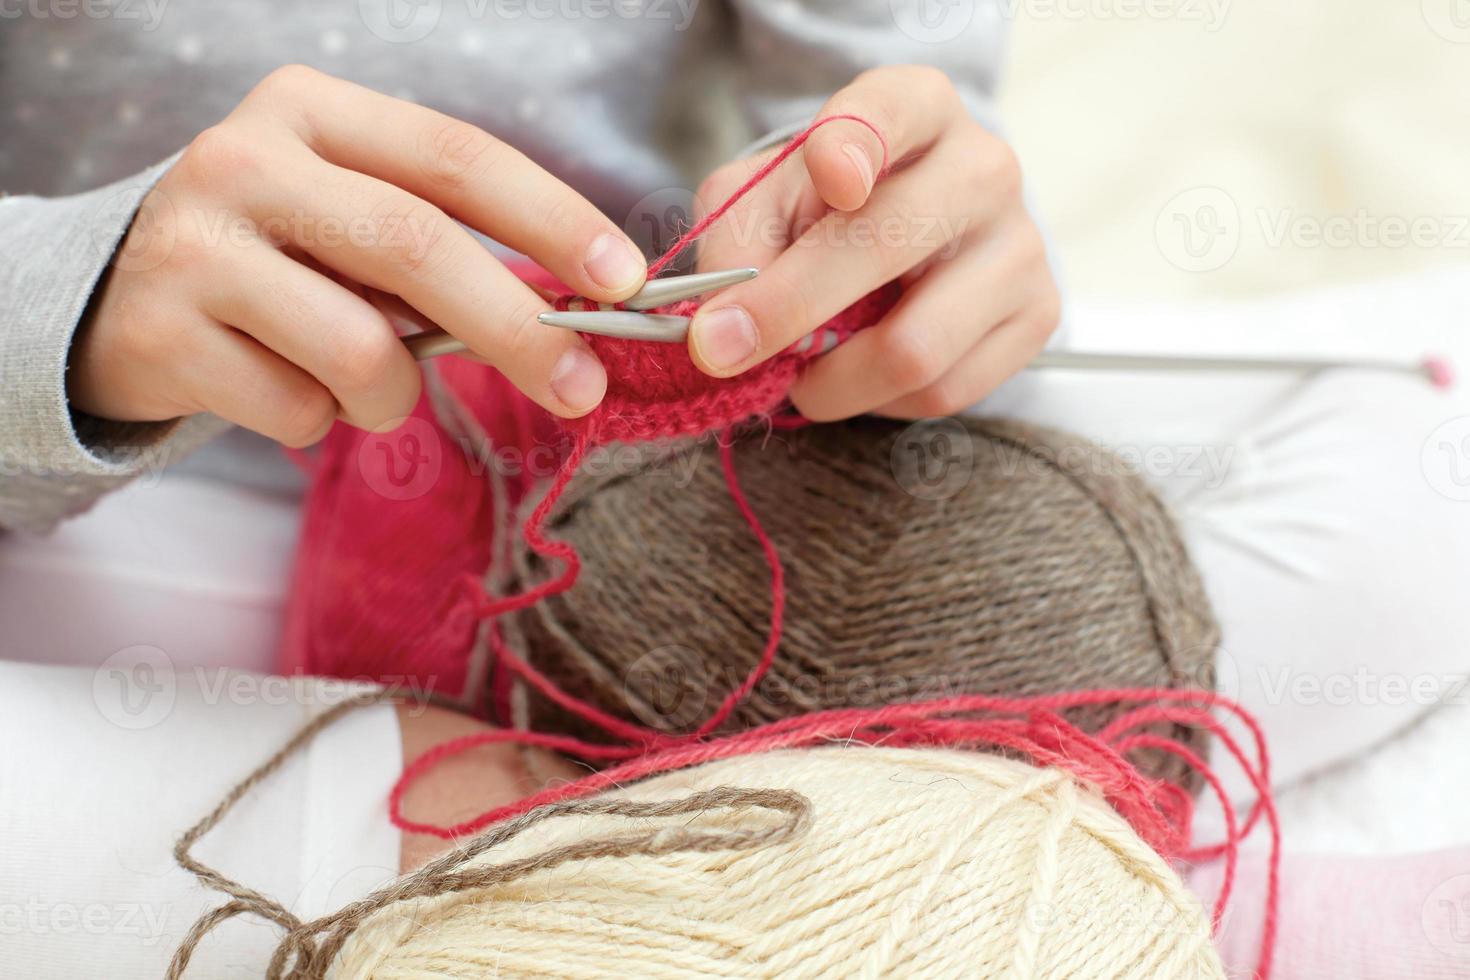 petit enfant apprend à tricoter. style de vie - enfance photo